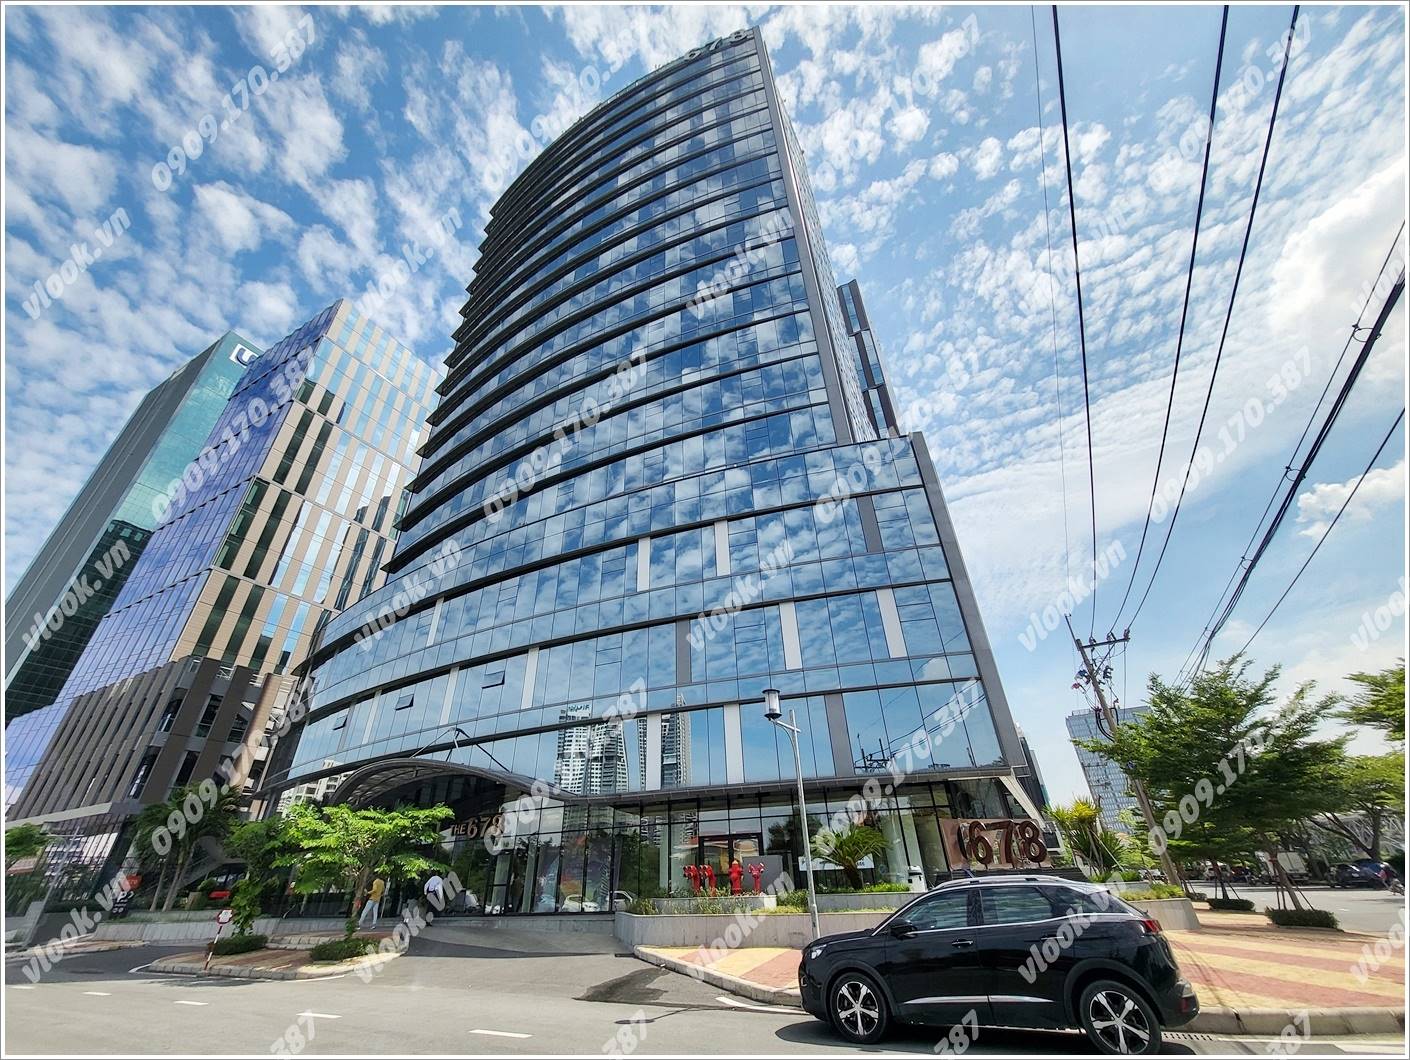 Cao ốc văn phòng cho thuê toà nhà 678 Tower, Hoàng Văn Thái, Phường Tân Phú, Quận 7, TPHCM - vlook.vn